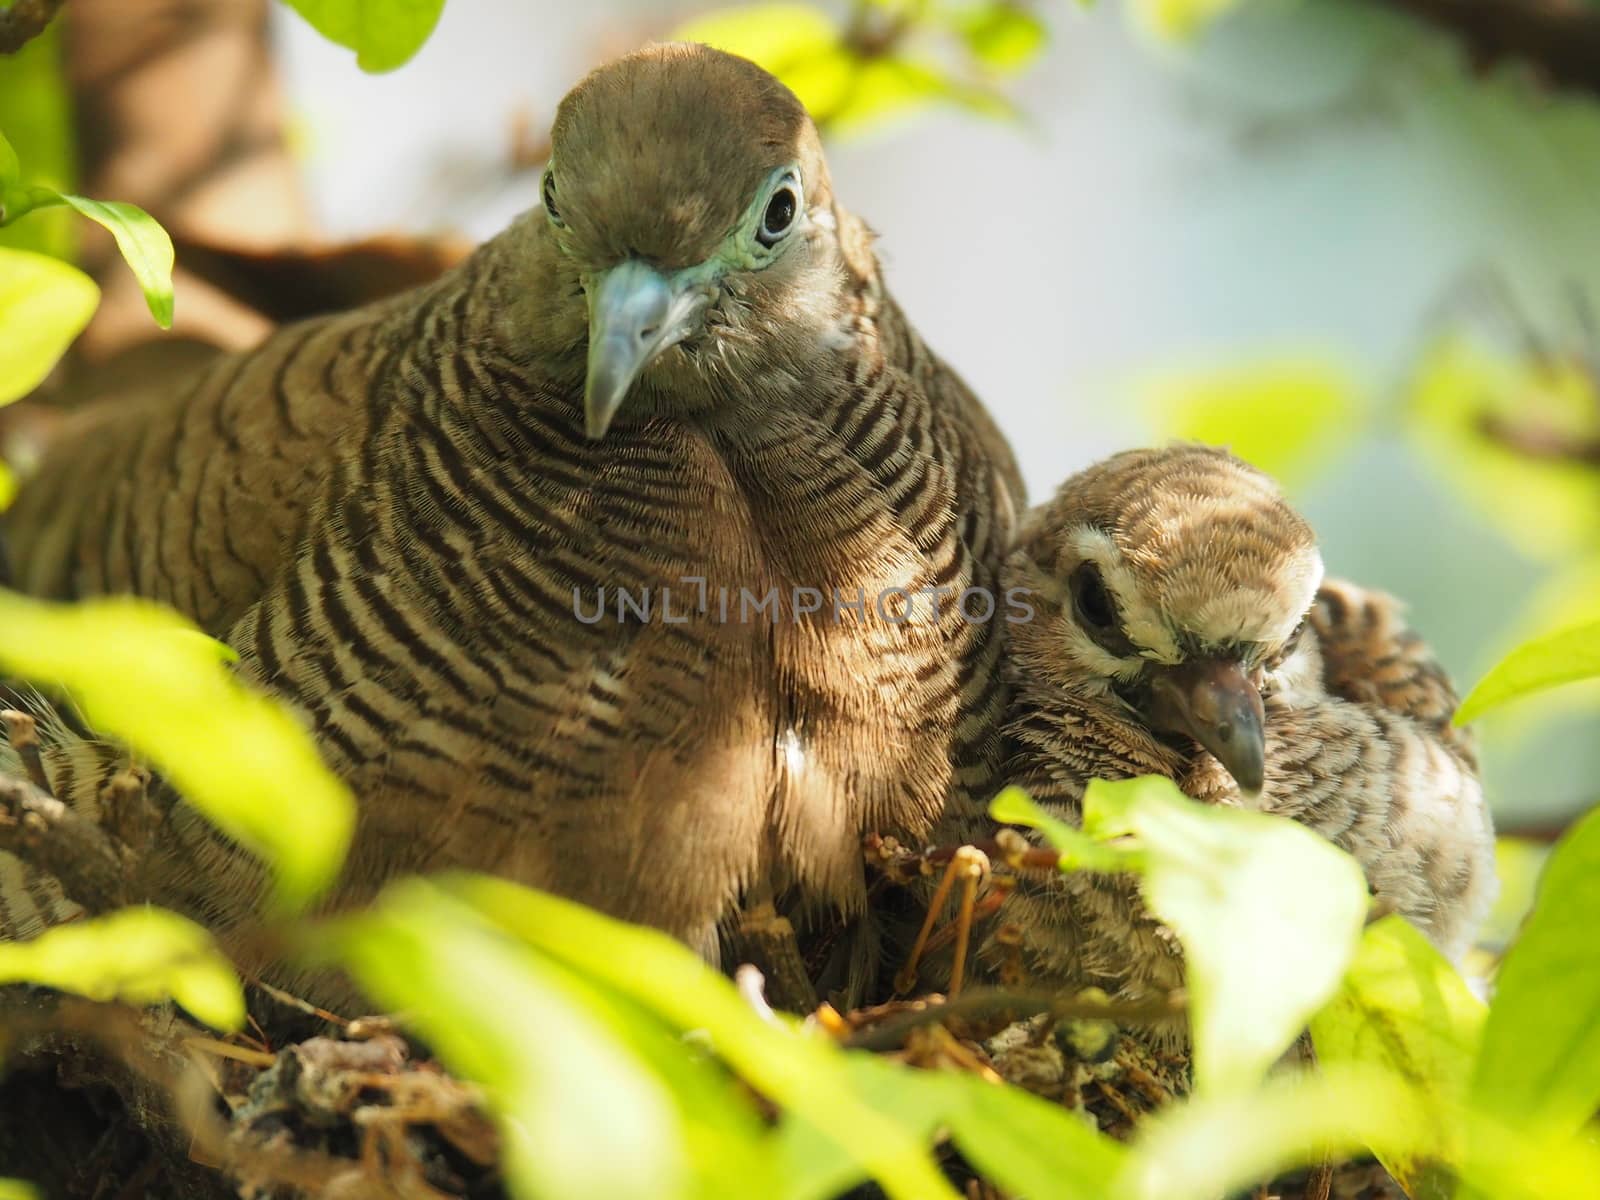 Two Birds In Bird's Nest, Baby Bird With Mother Portrait by WernBkk